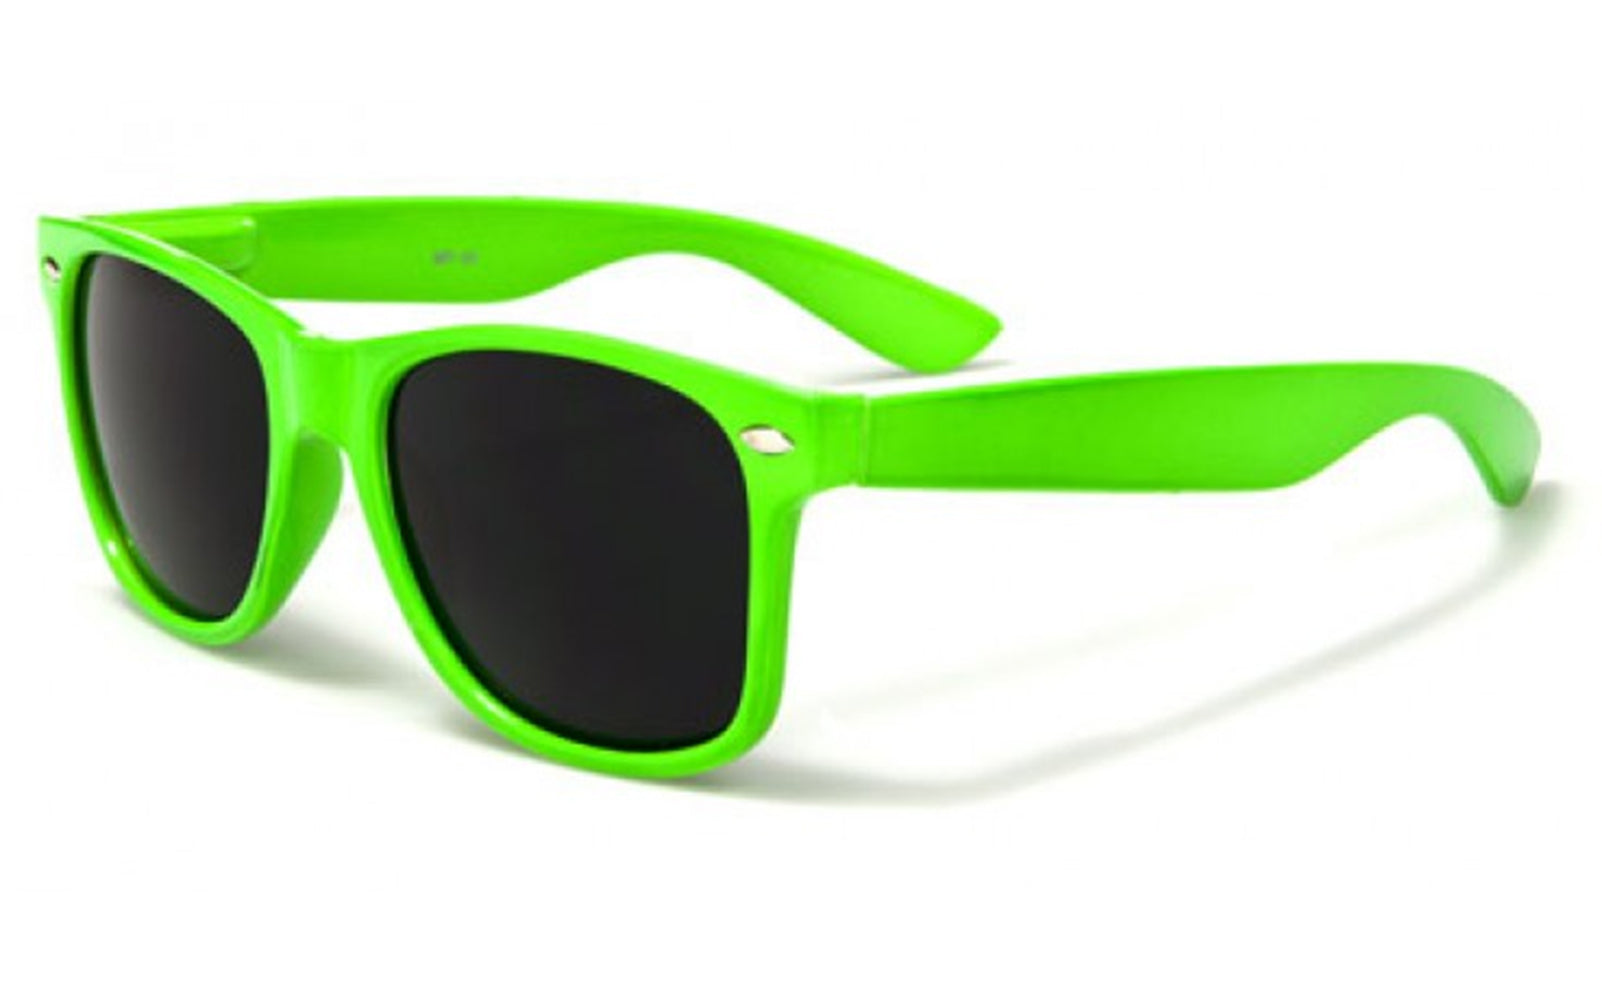 Wayfarer Sunglasses in Assorted Colors Bewild